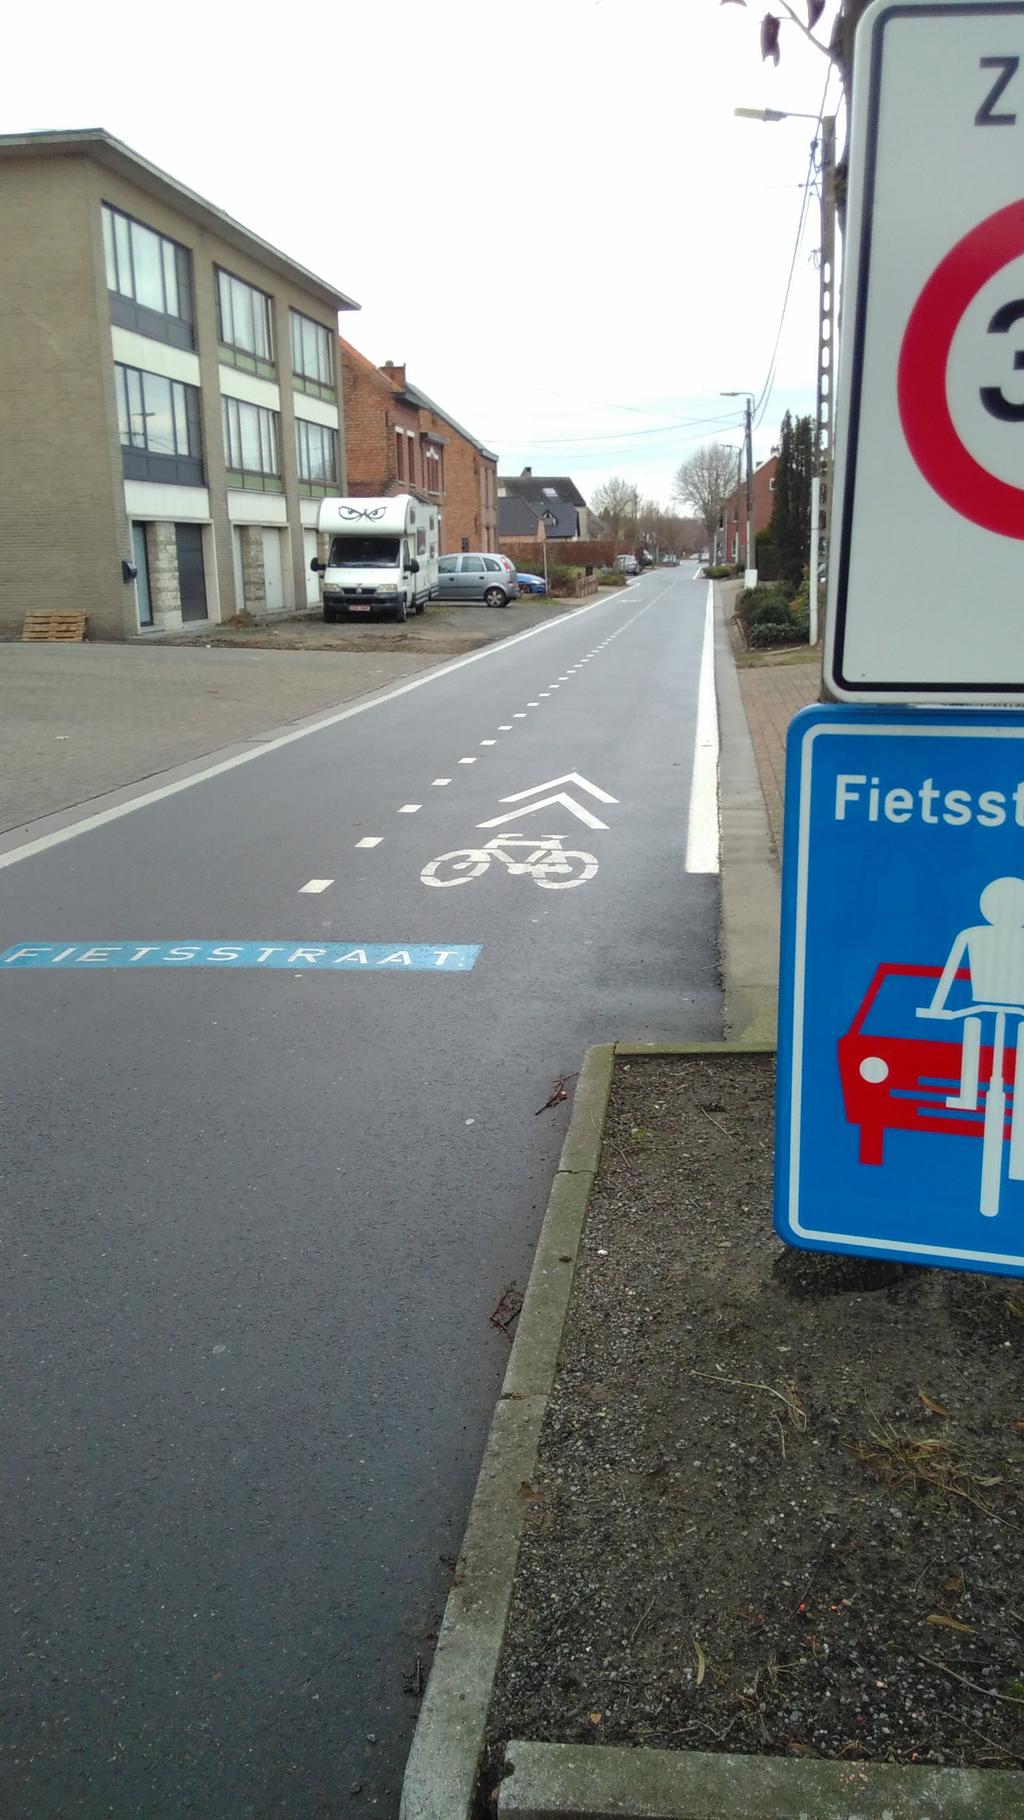 Appendix: voorbeelden van fietsstraten Fietsstraat in Putte.